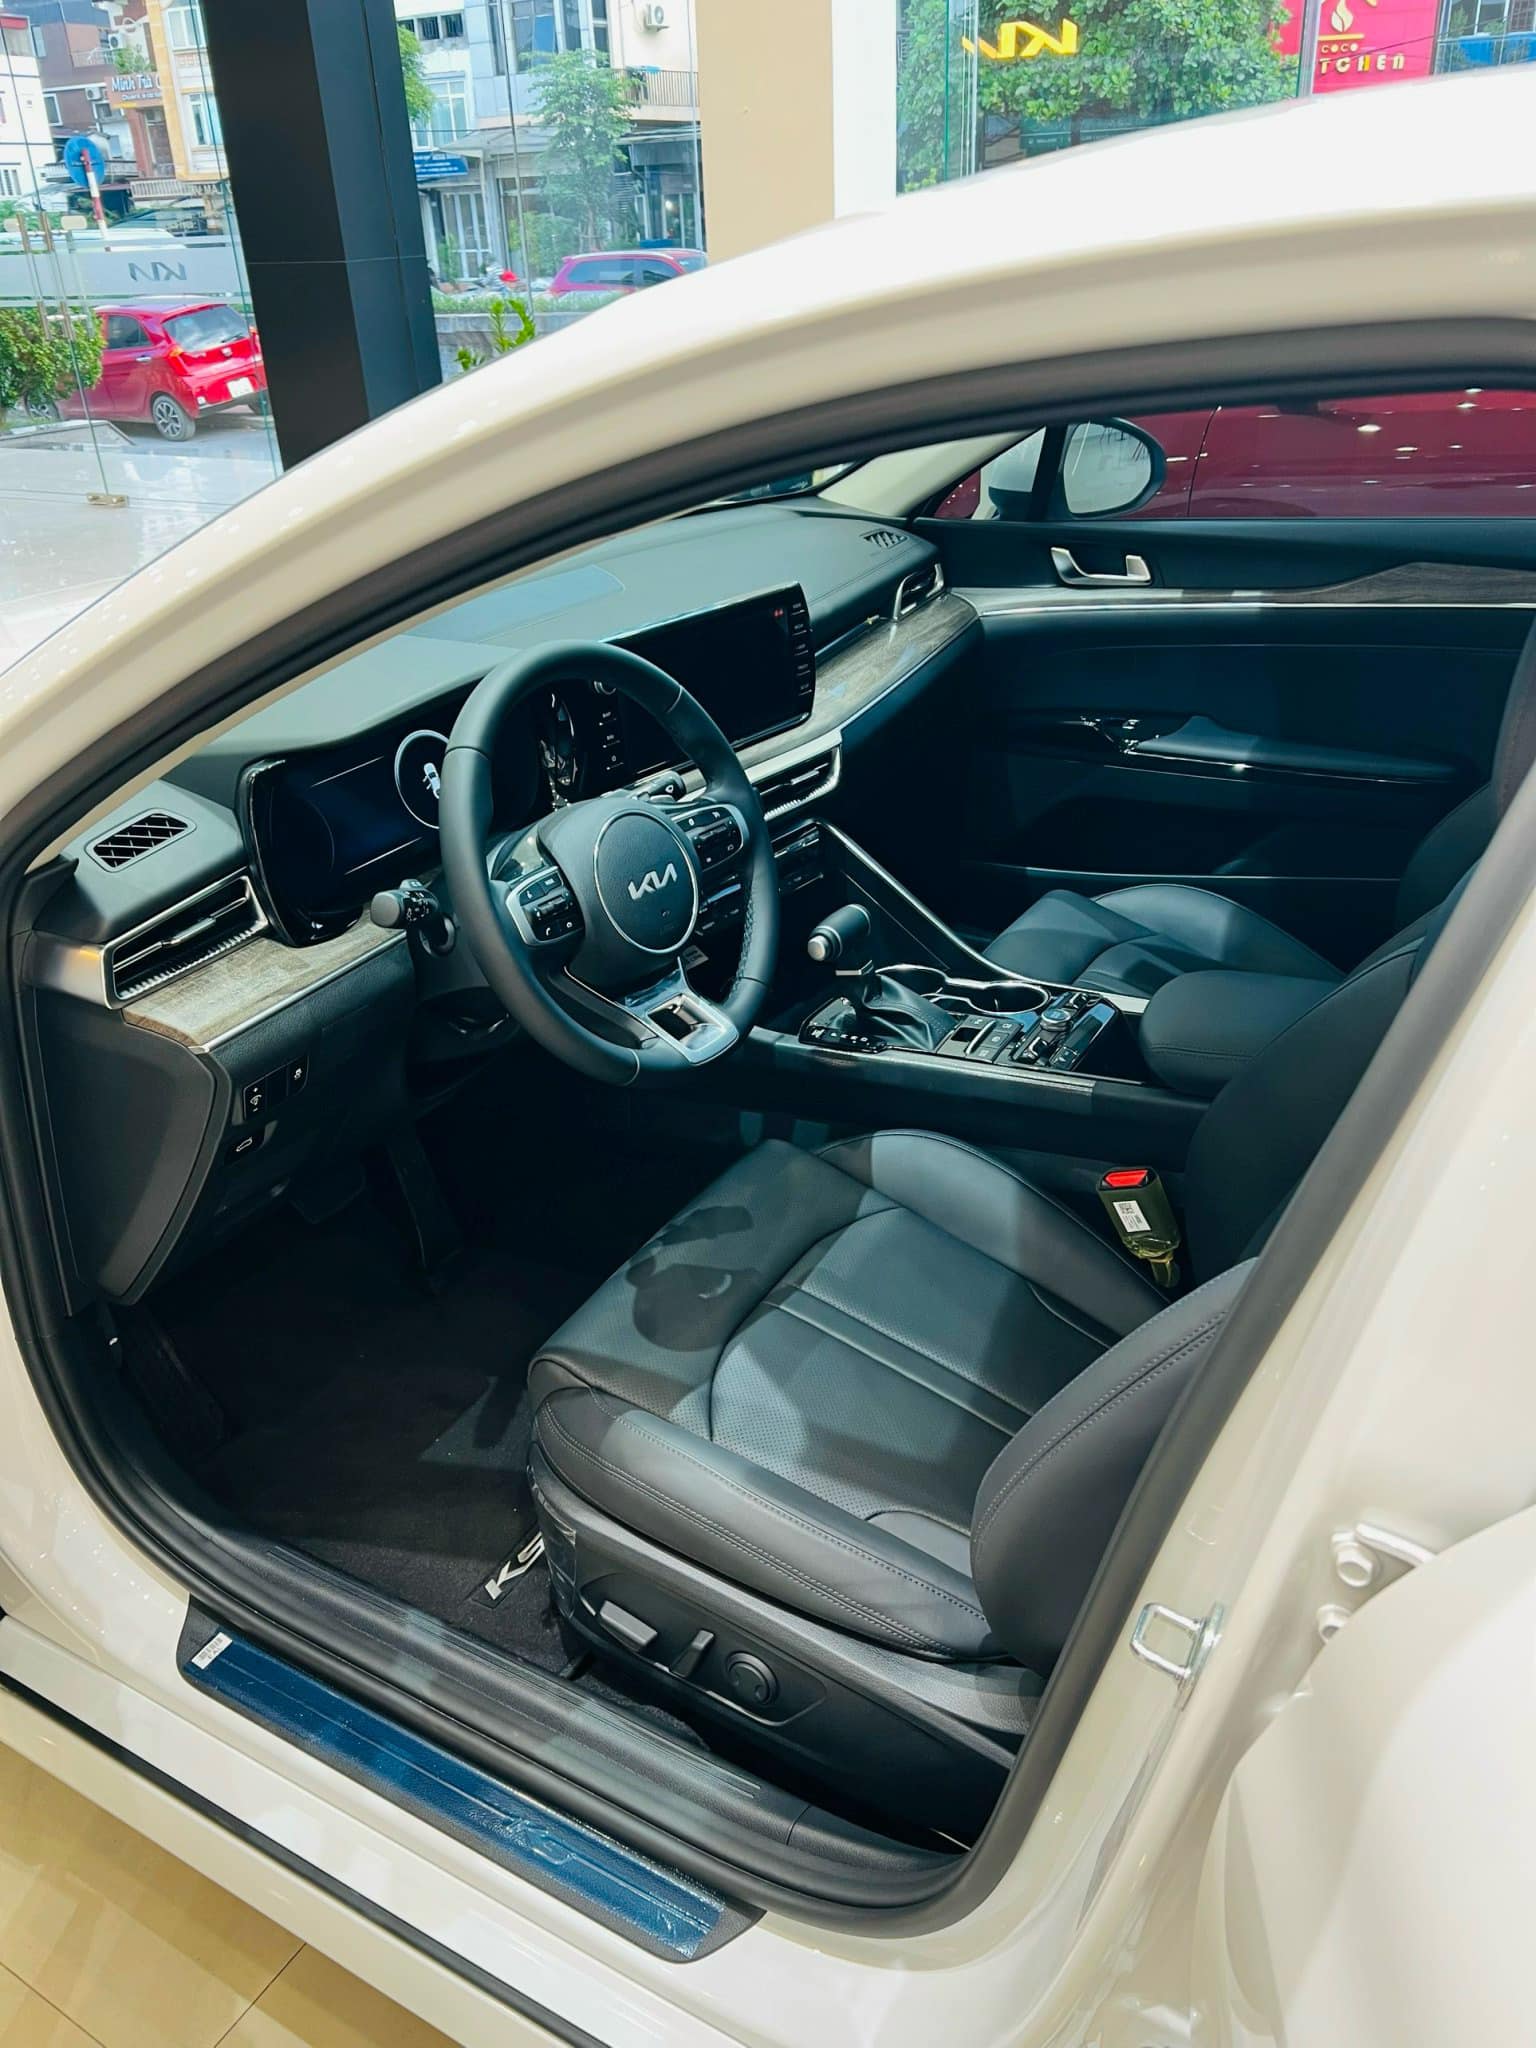 Giá Kia K5 chạm đáy mới: Giảm kỷ lục 139 triệu đồng, rẻ hơn cả Corolla Altis bản tiêu chuẩn - Ảnh 2.